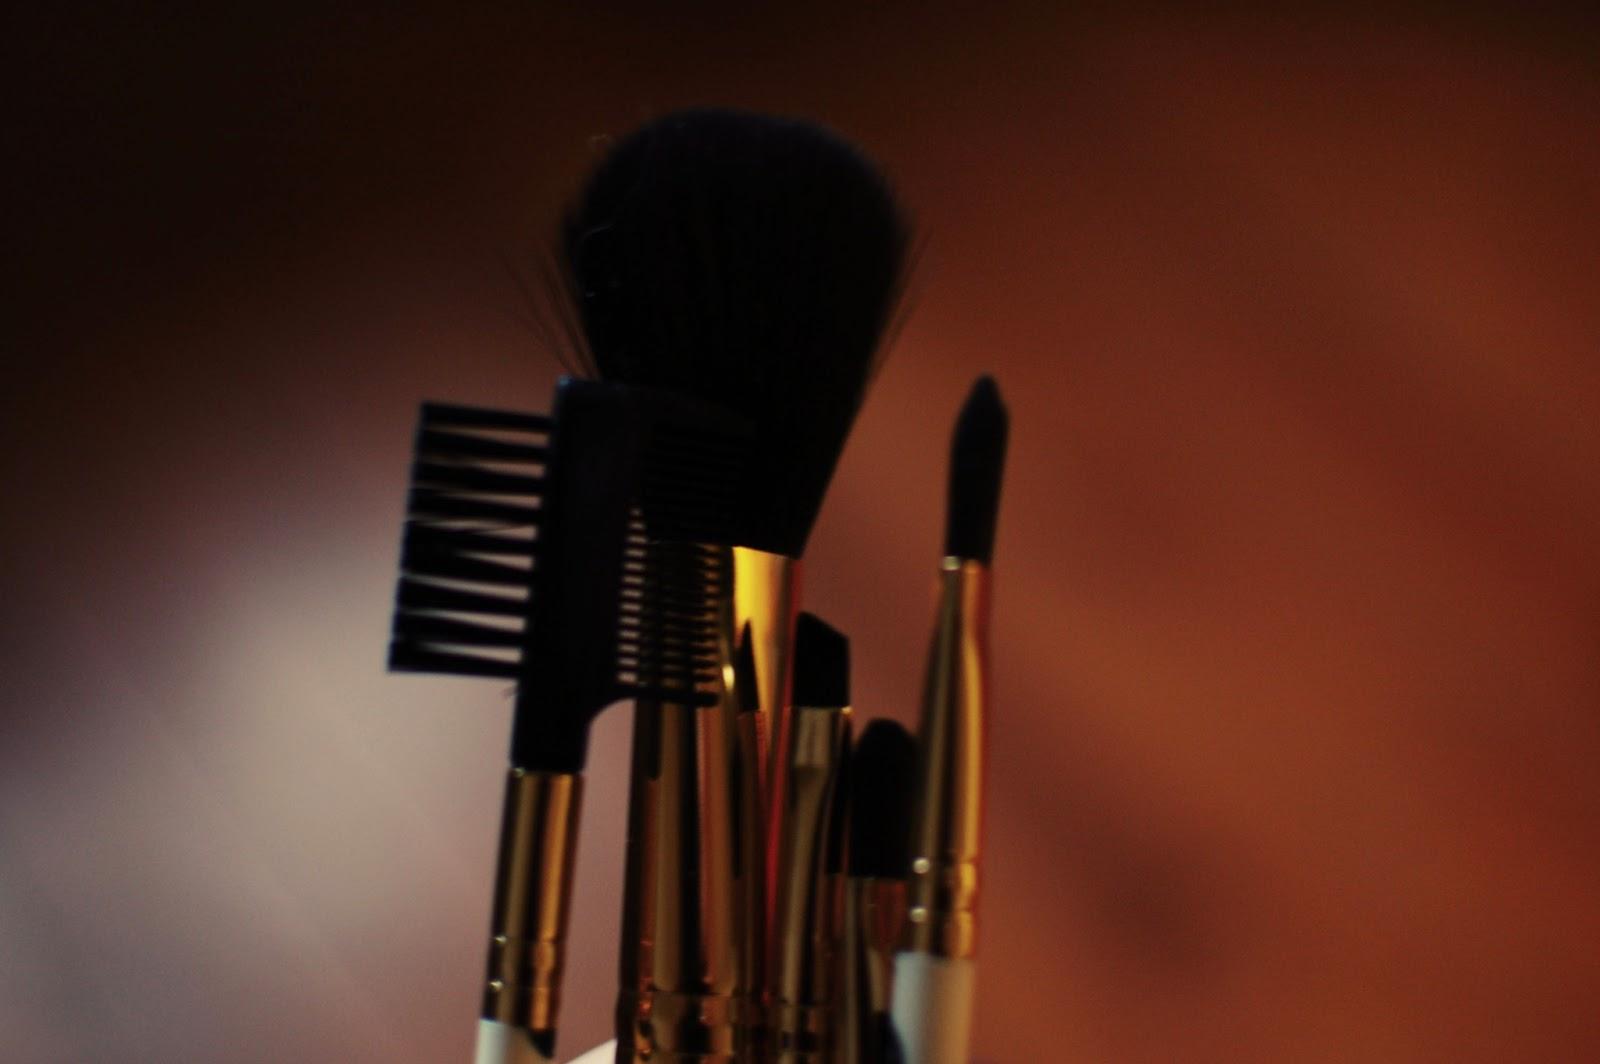 brushes-forever21-make-up-accesories-pinceaux-maquillage-accessoire-beauté-eyelid-blush-eyebrow-eyelash-sourcil-paupière-cil-petit-prix-cheap